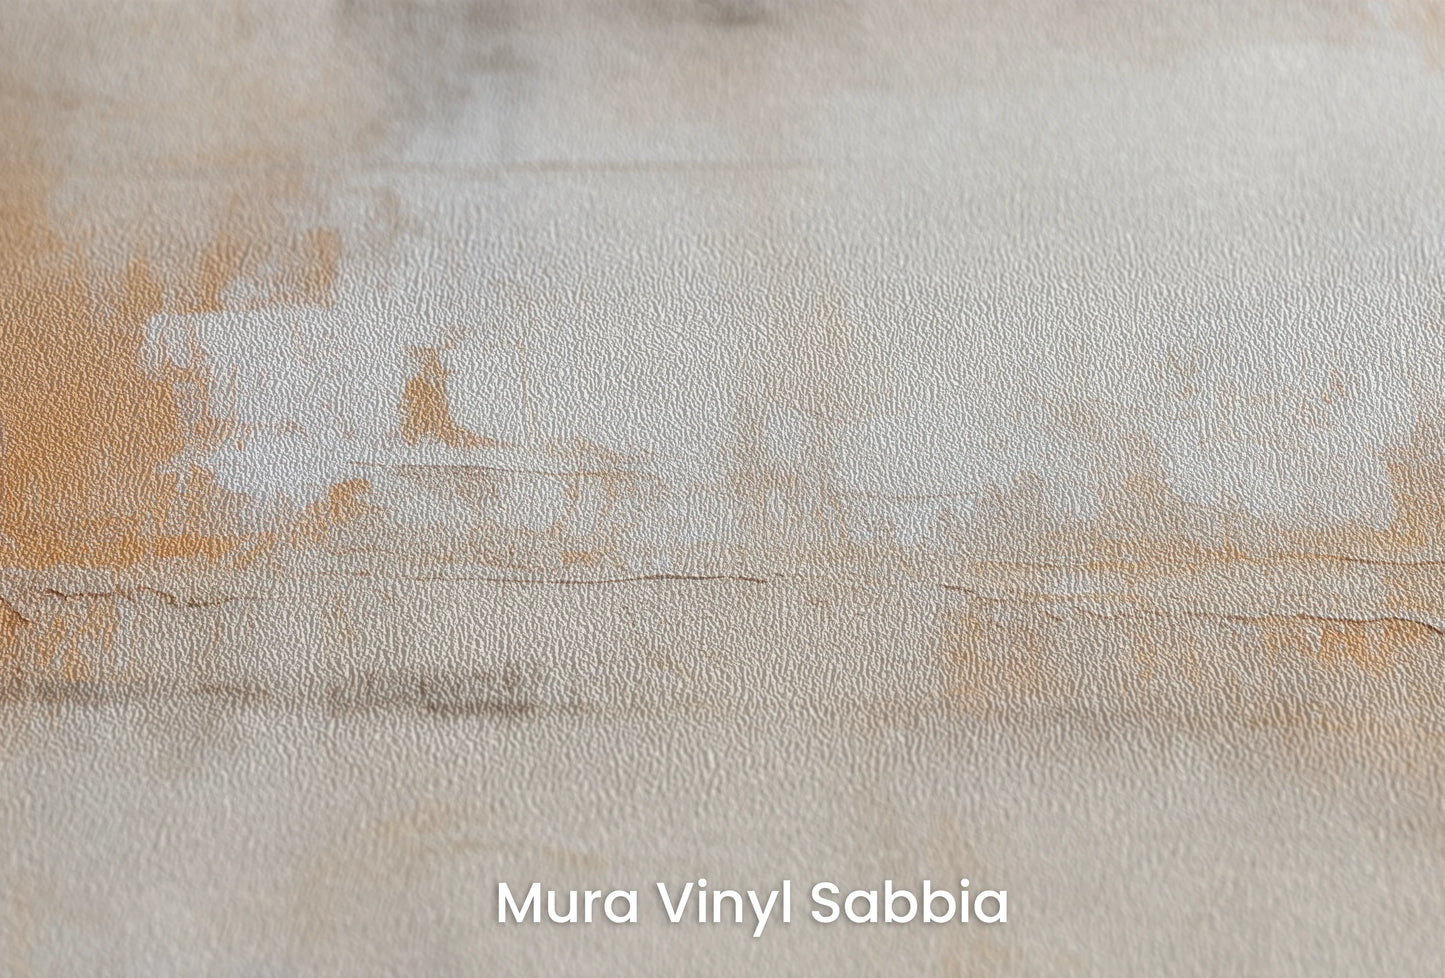 Zbliżenie na artystyczną fototapetę o nazwie Contemporary Whites na podłożu Mura Vinyl Sabbia struktura grubego ziarna piasku.